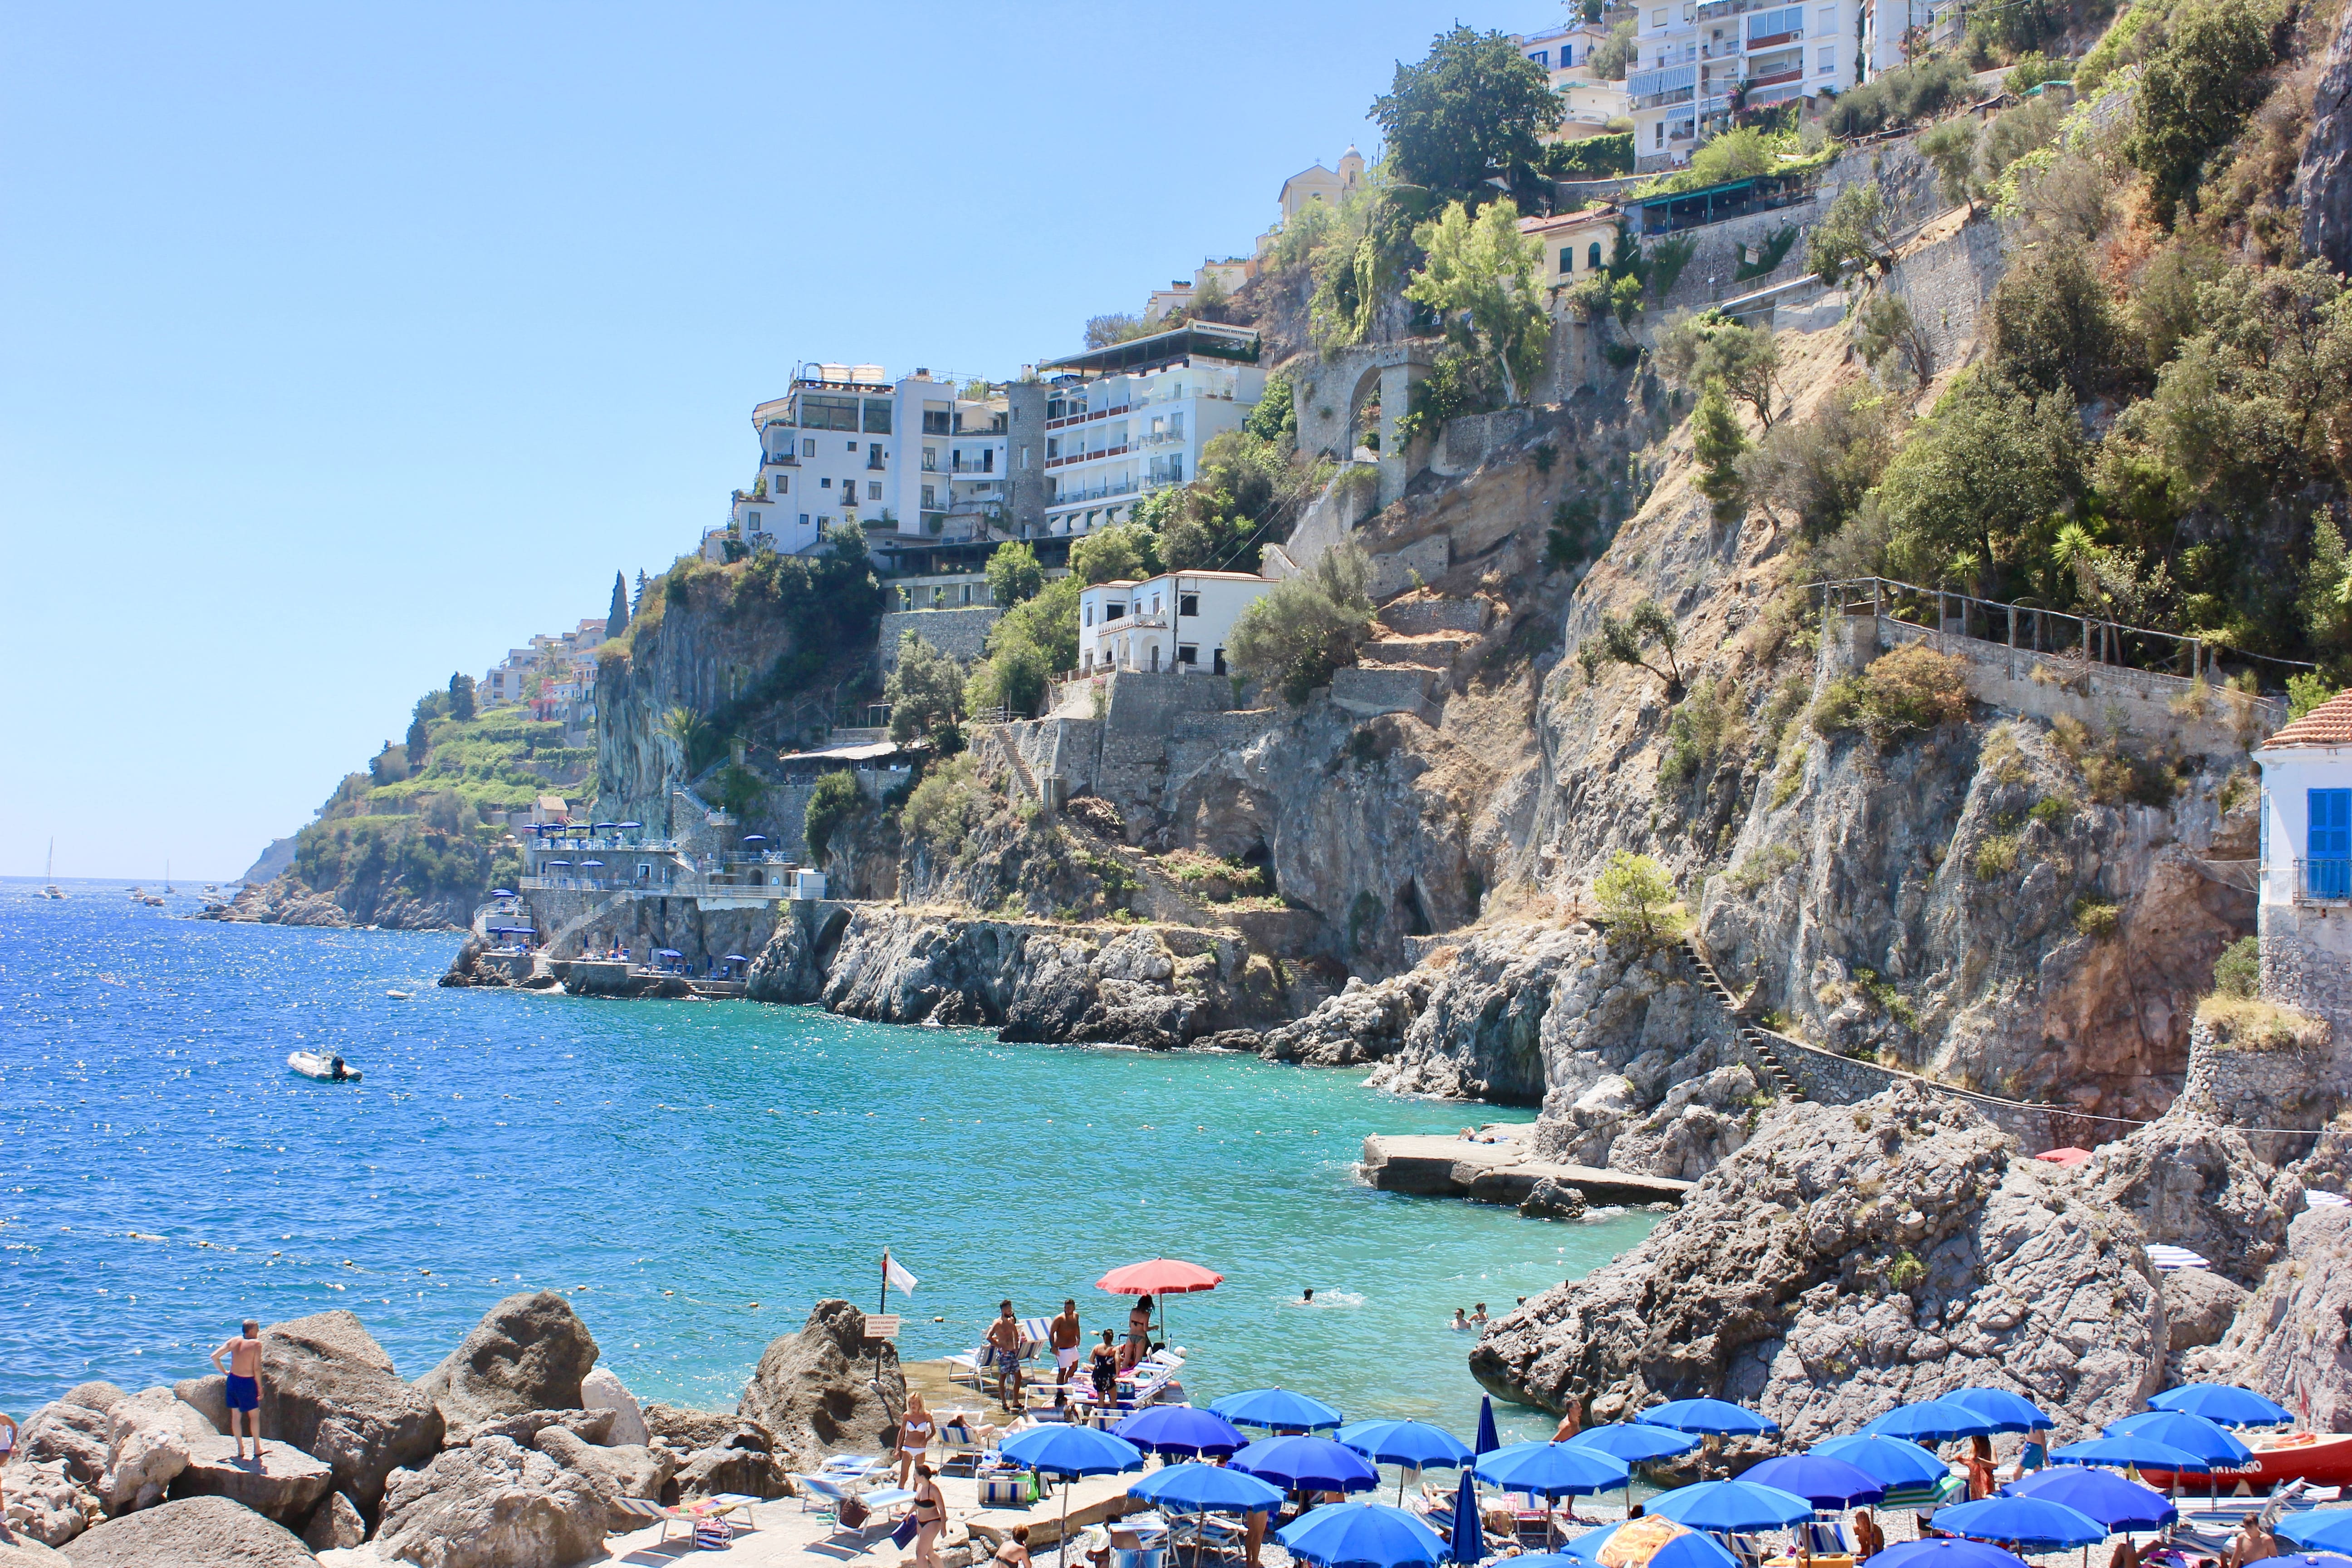 Olaszország Instagram-kompatibilis nyaralóhelyei - A Cinque Terre és az Amalfi-part az ország ékkövei